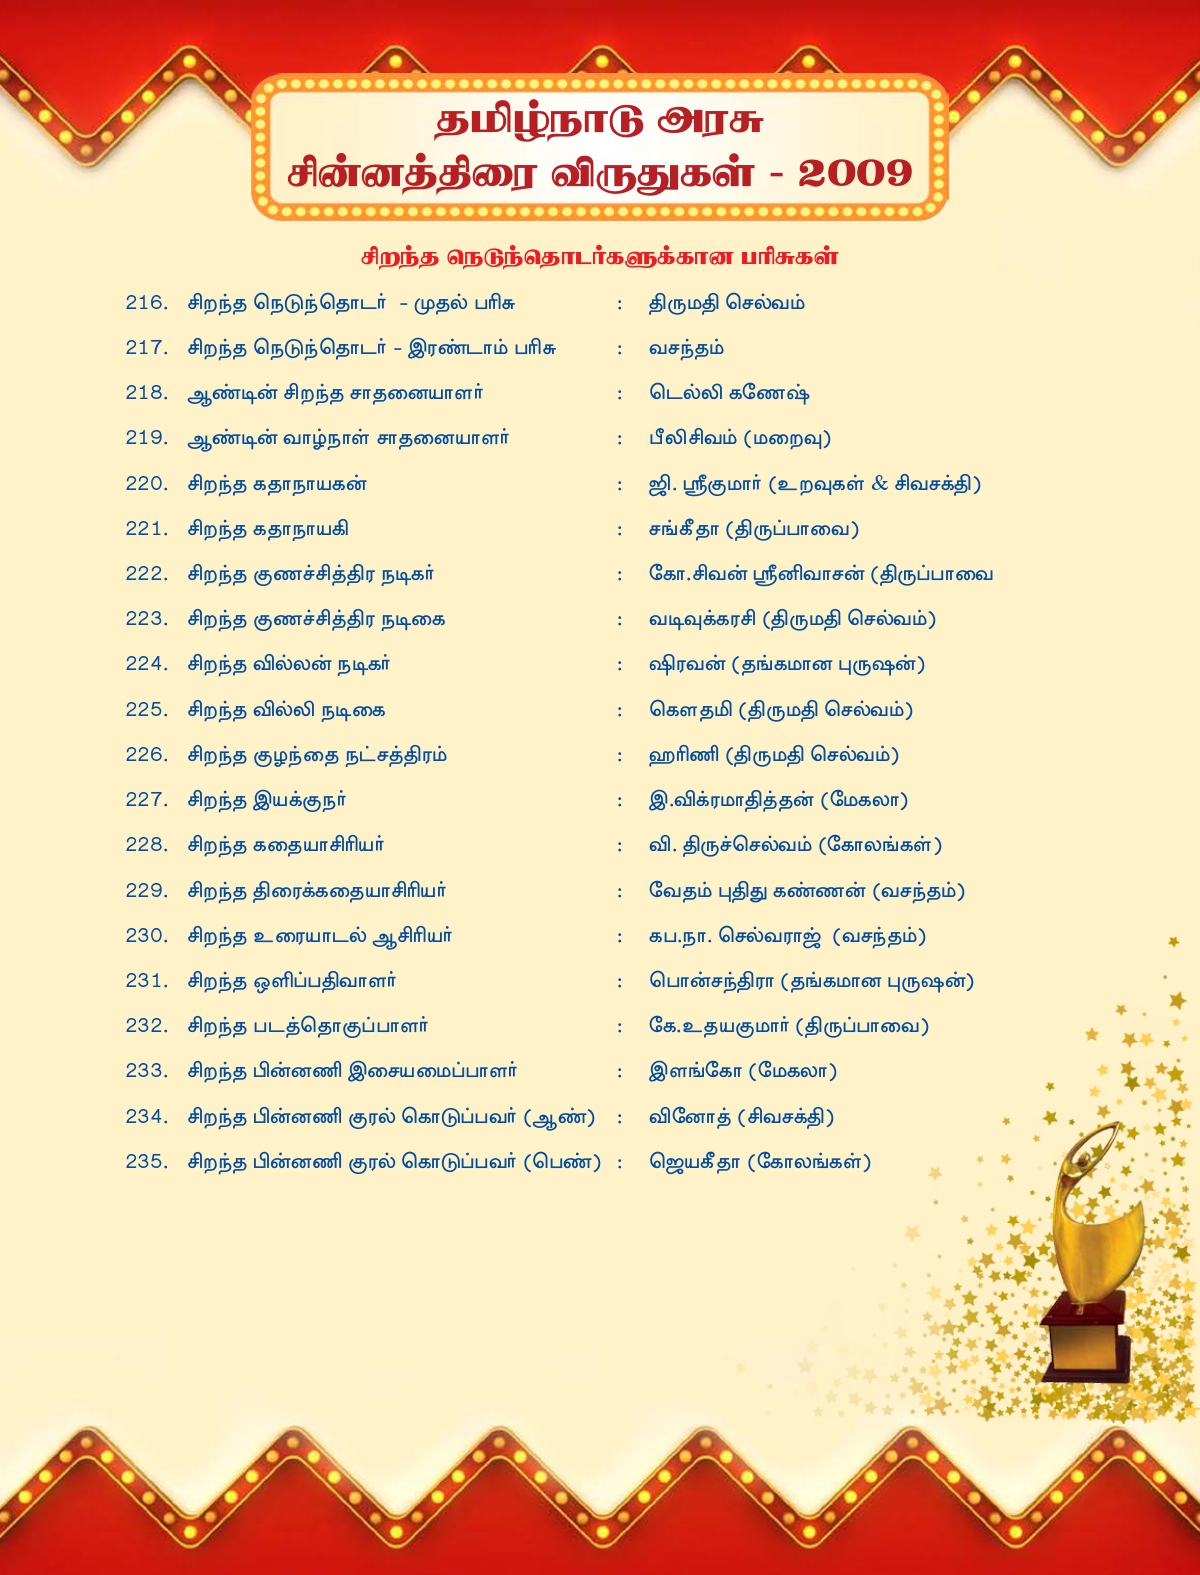  தமிழ்நாடு அரசு சின்னத்திரை விருதுகள் - 2009